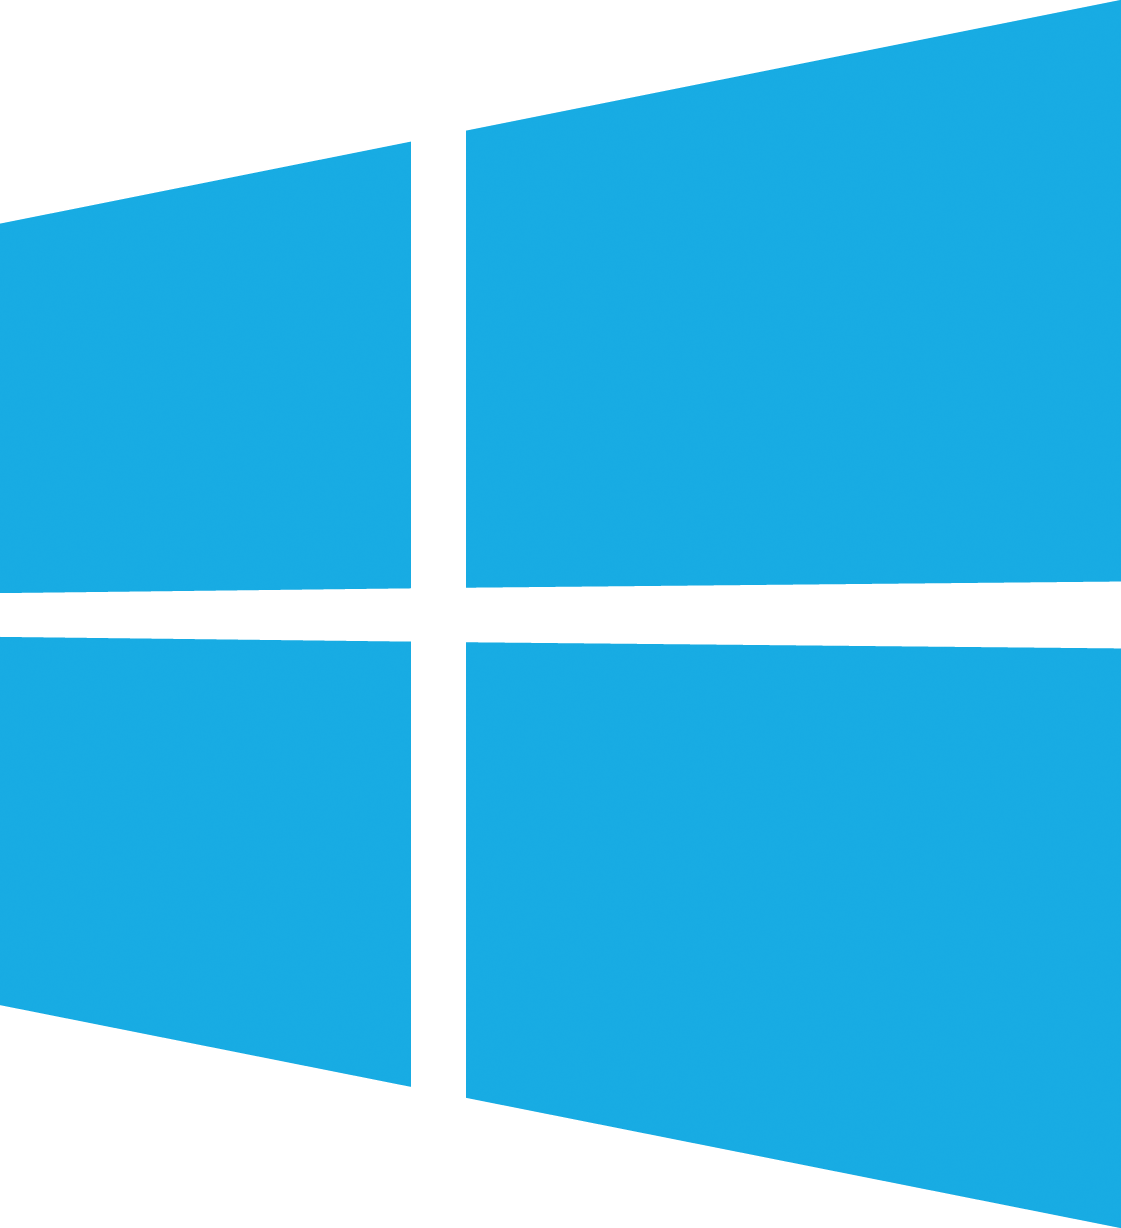 Windows Logo Vector